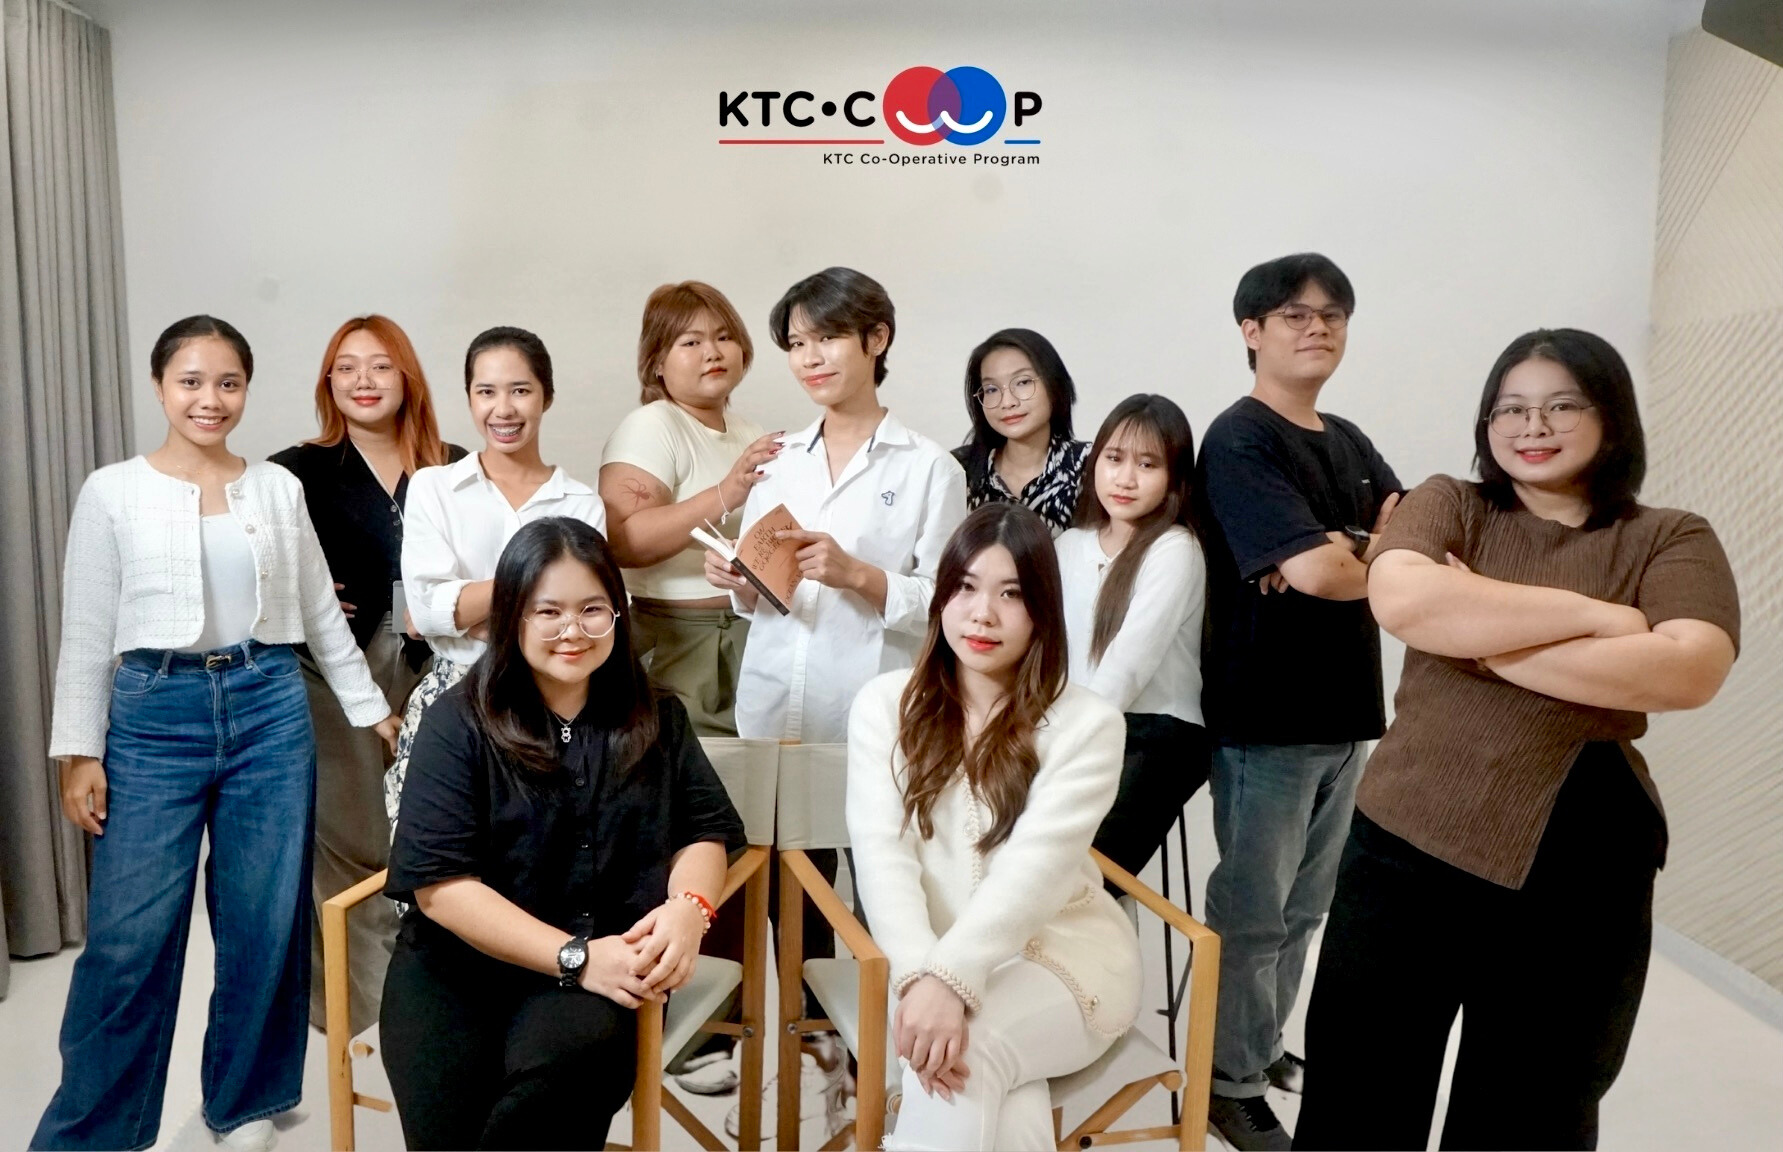 เคทีซีสานต่อโครงการรับนักศึกษาฝึกงาน KTC COOP รุ่นที่ 4 มุ่งพัฒนาคนรุ่นใหม่ให้พร้อมสู่โลกการทำงาน